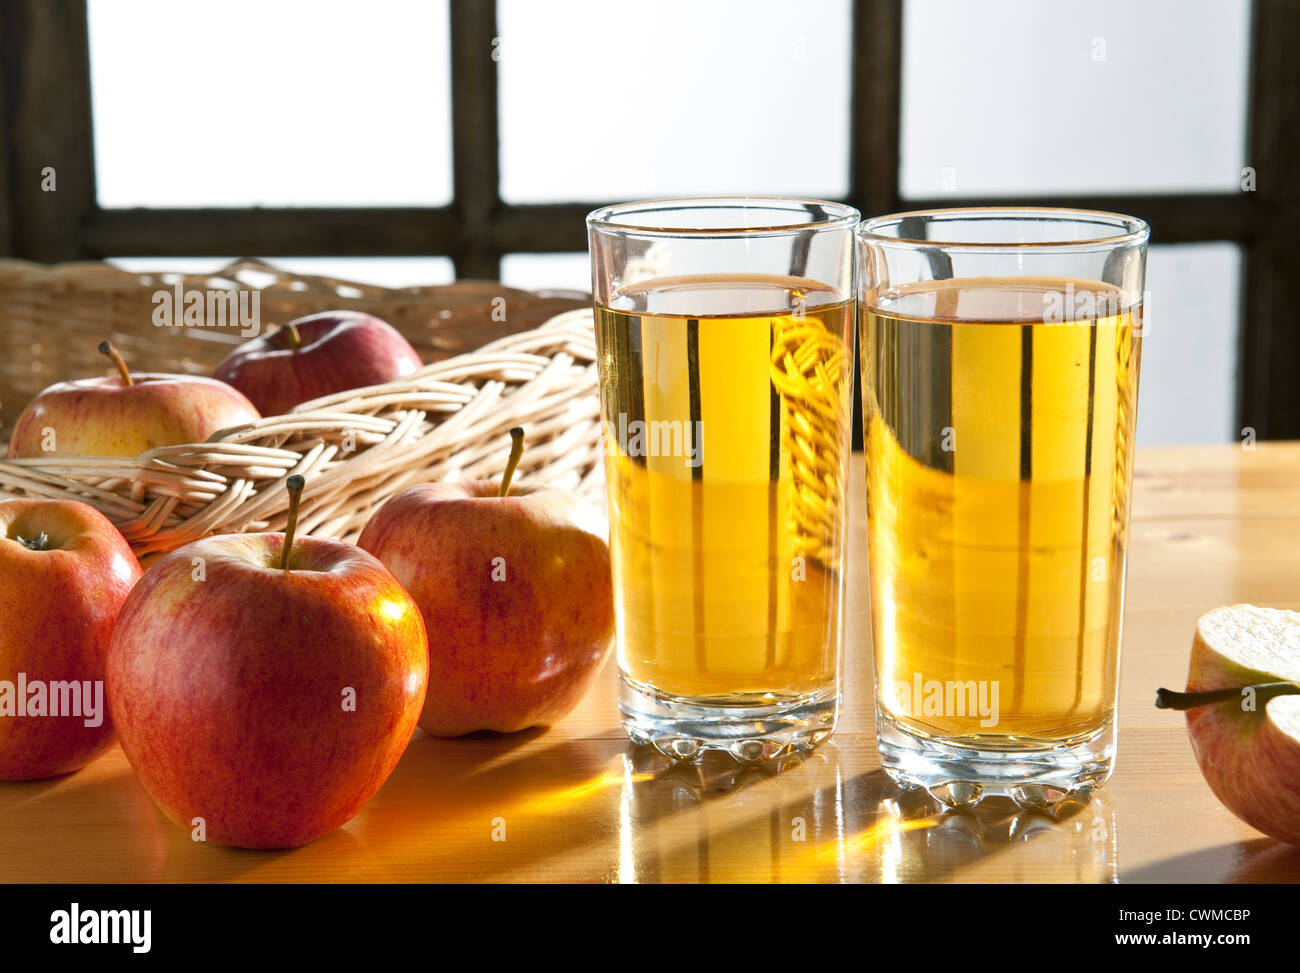 Apfelsaft - zwei Gläser Apfelsaft am Küchentisch, mit Äpfeln Stockfoto